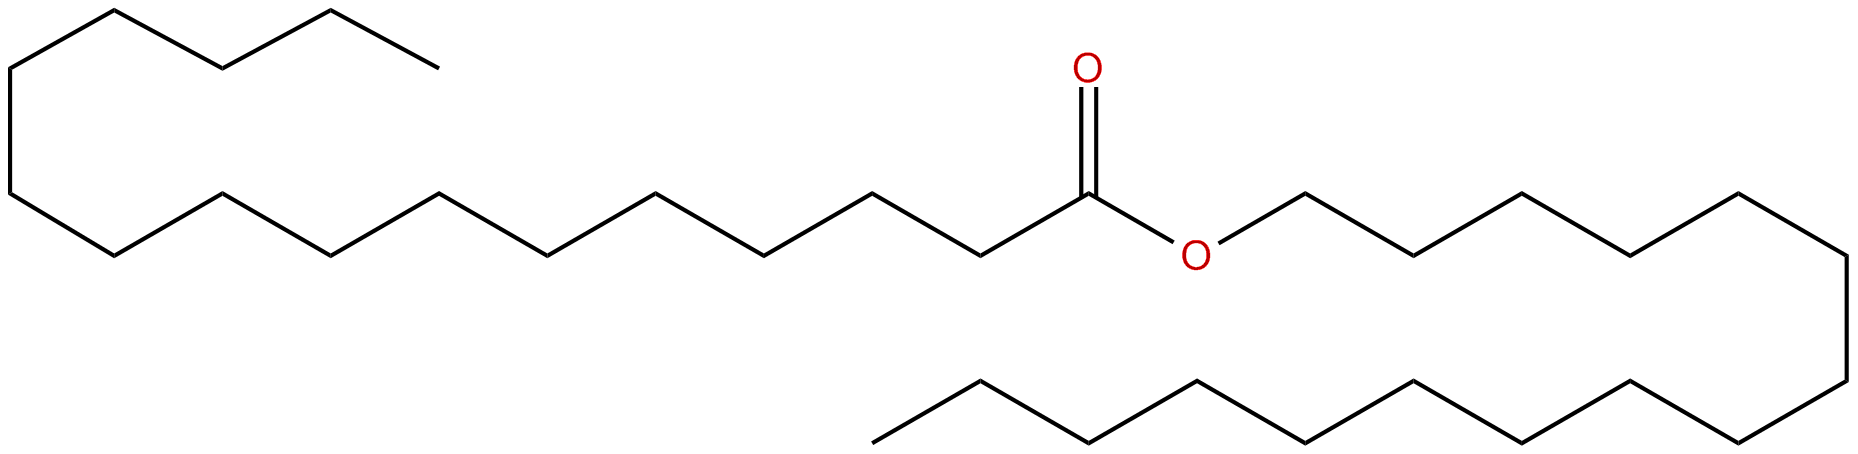 Image of hexadecanoic acid, 1-hexadecyl ester